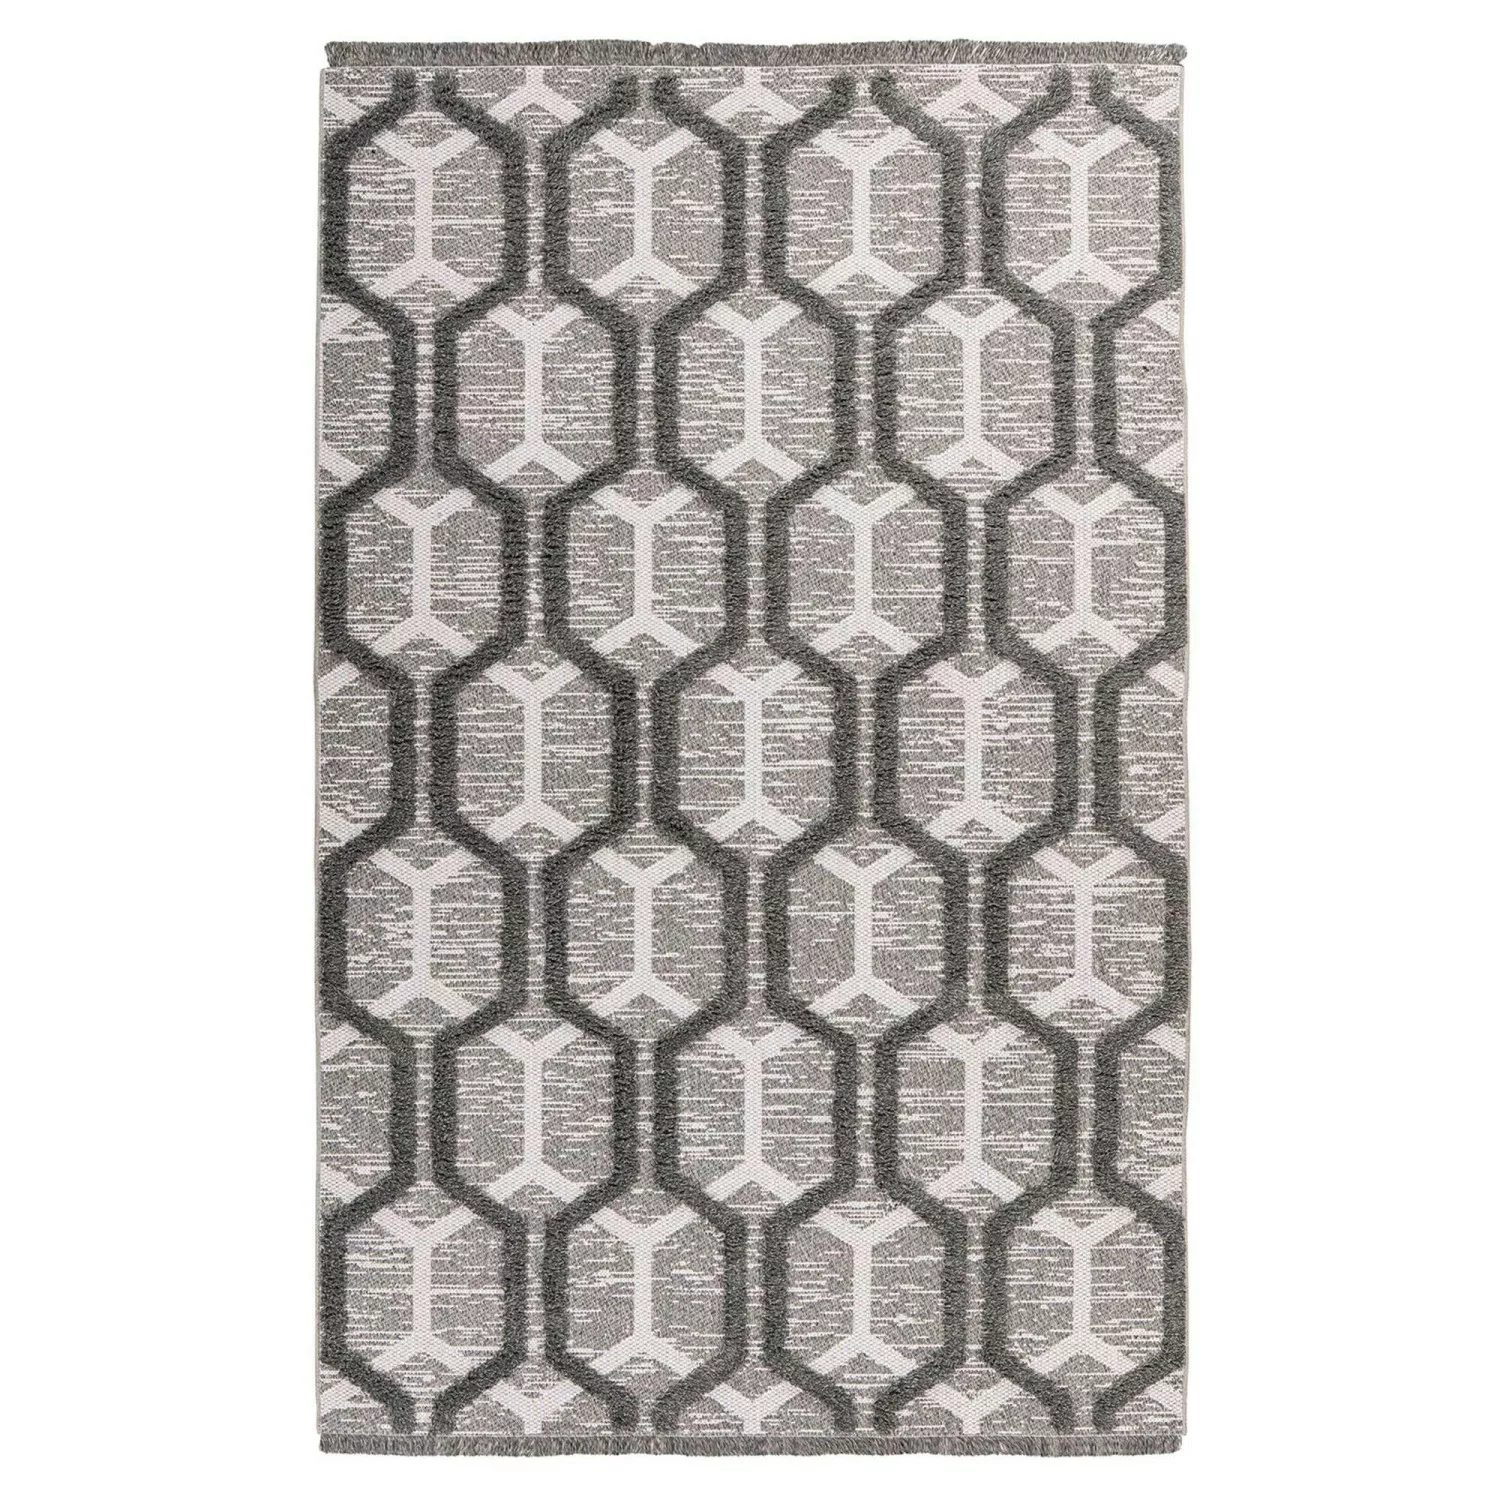 MeGusta Kurzflor Teppich Retro Grau Recyceltes Material 120 x 170 cm günstig online kaufen